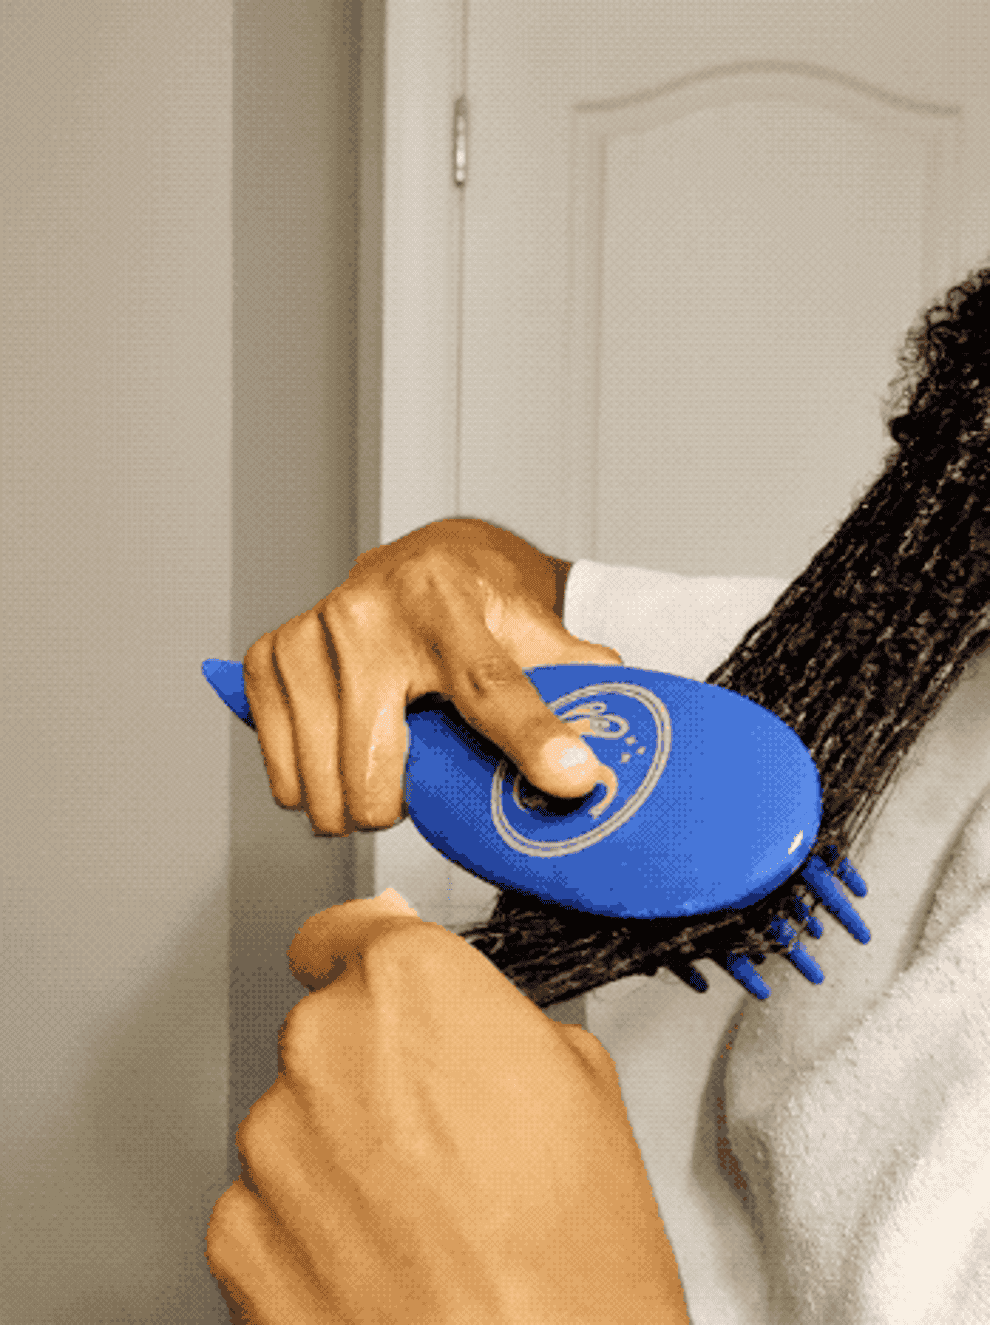 Person using a blue, circular hairbrush on their long hair